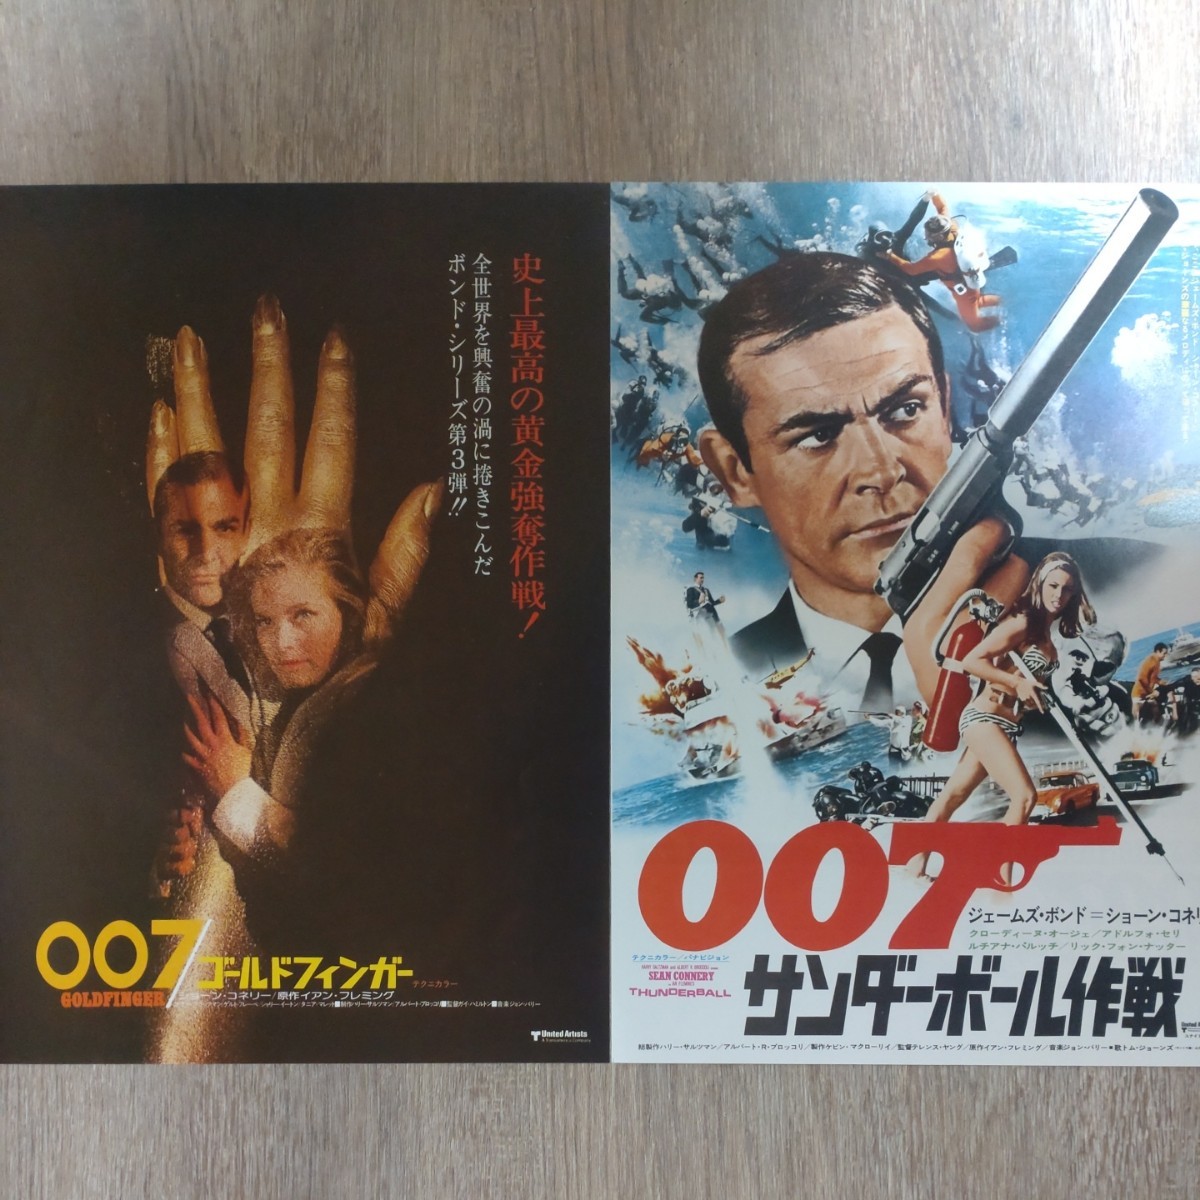 チラシ「007ユア・アイズ・オンリー」公開記念全12作チラシセット_画像3